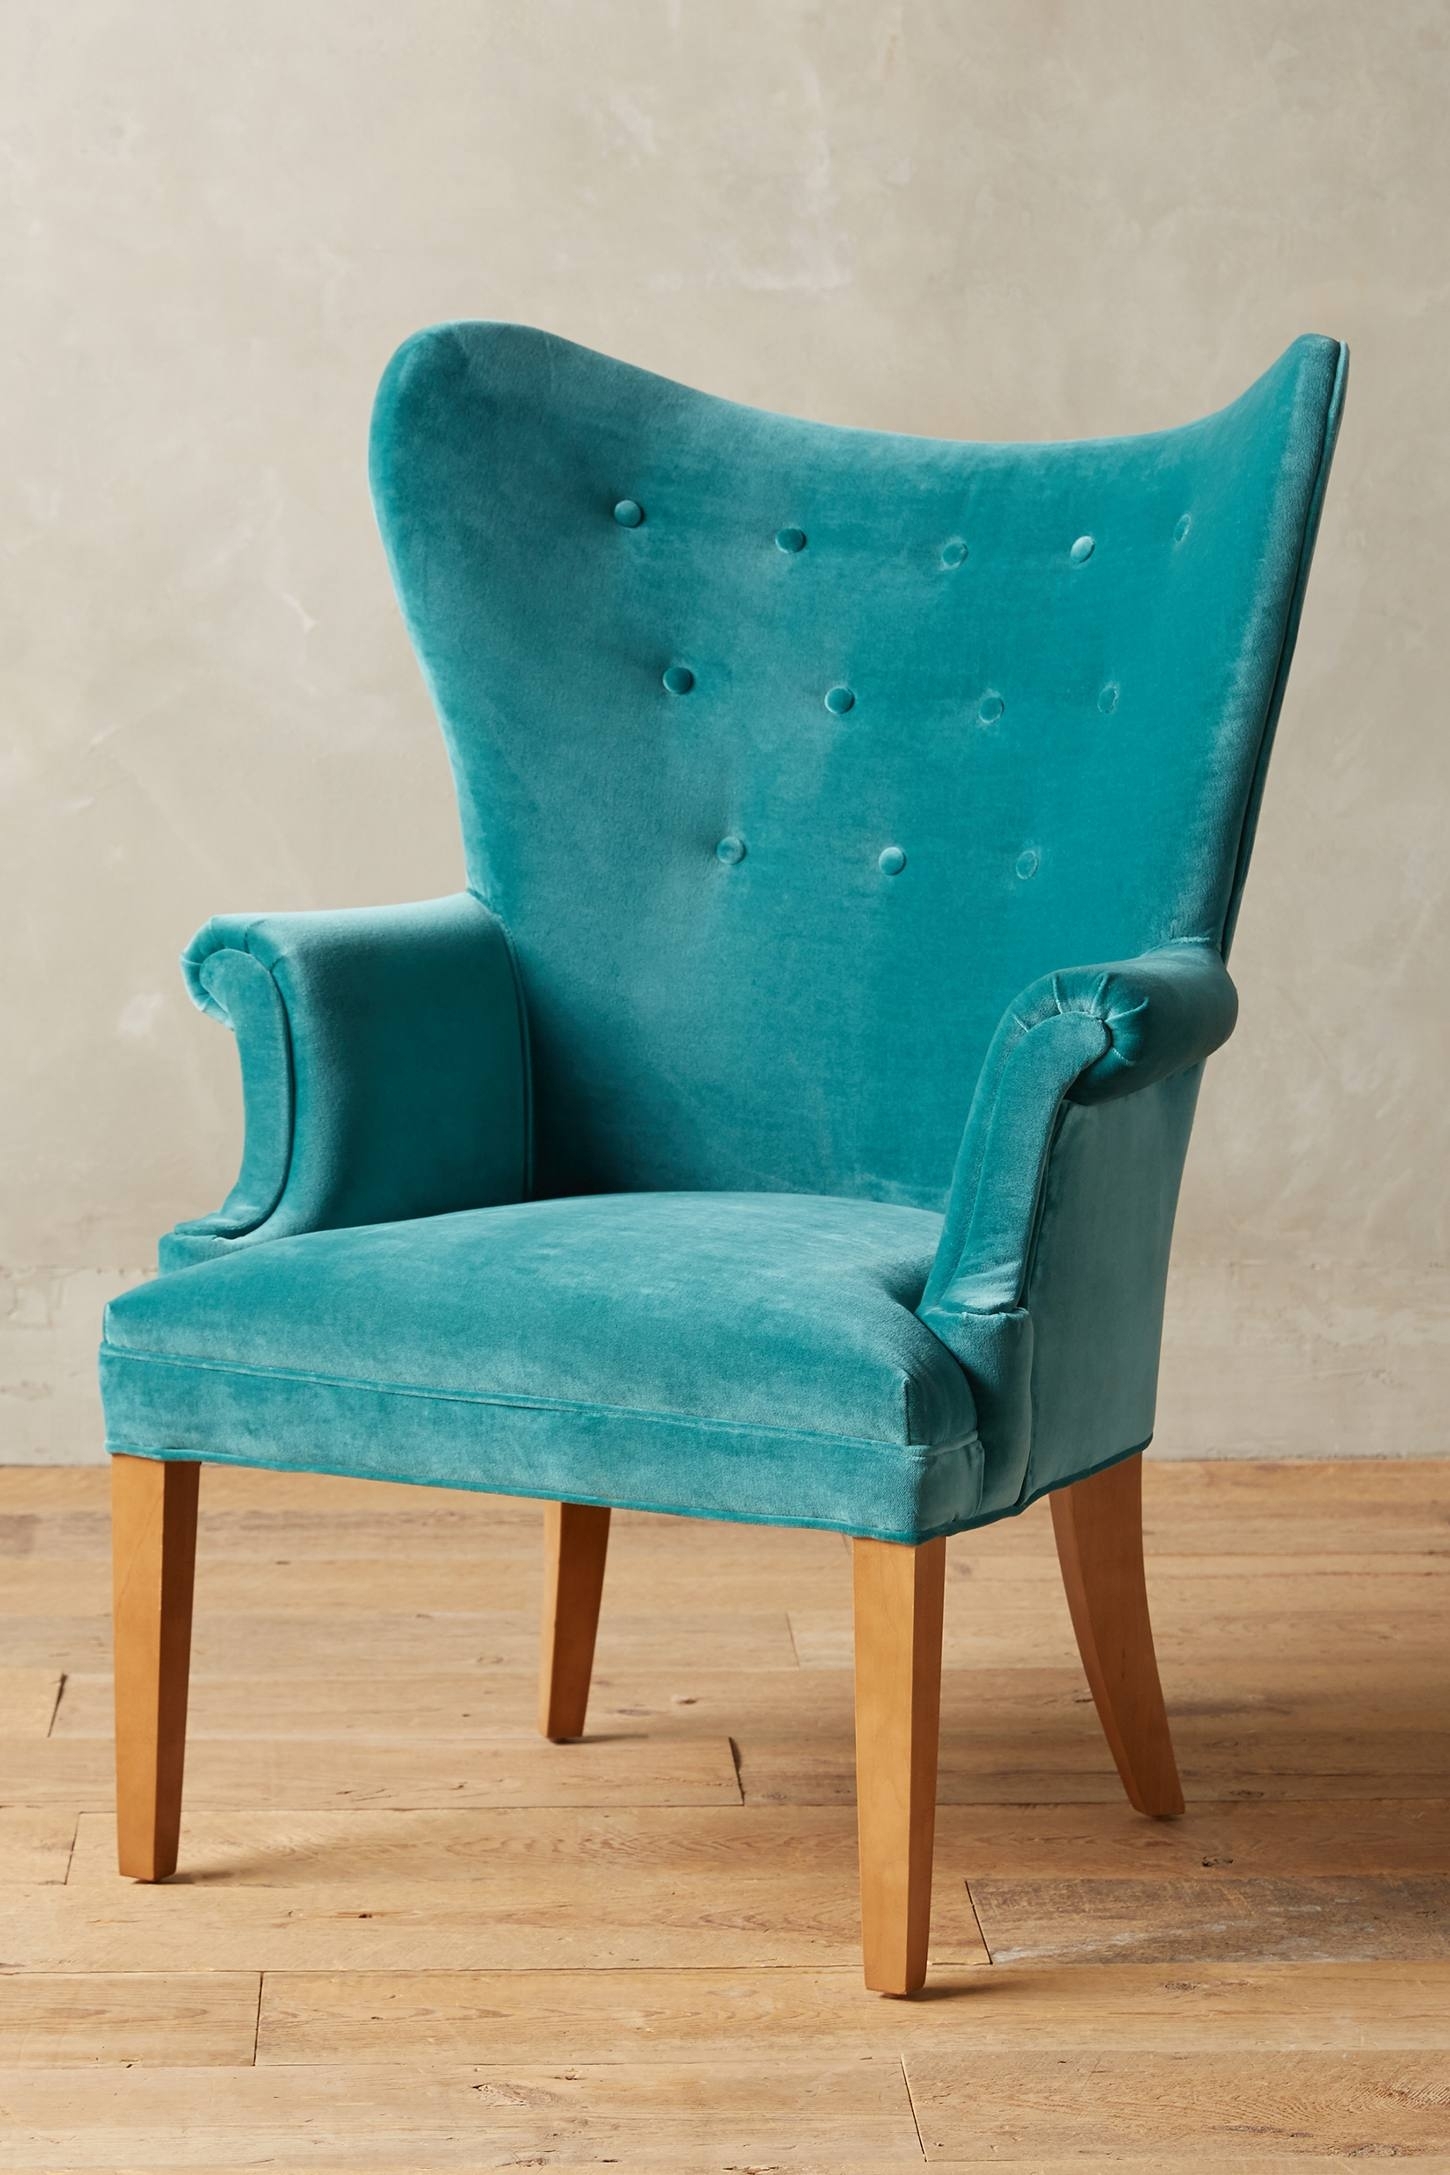 Velvet Wingback Chair Ideas on Foter